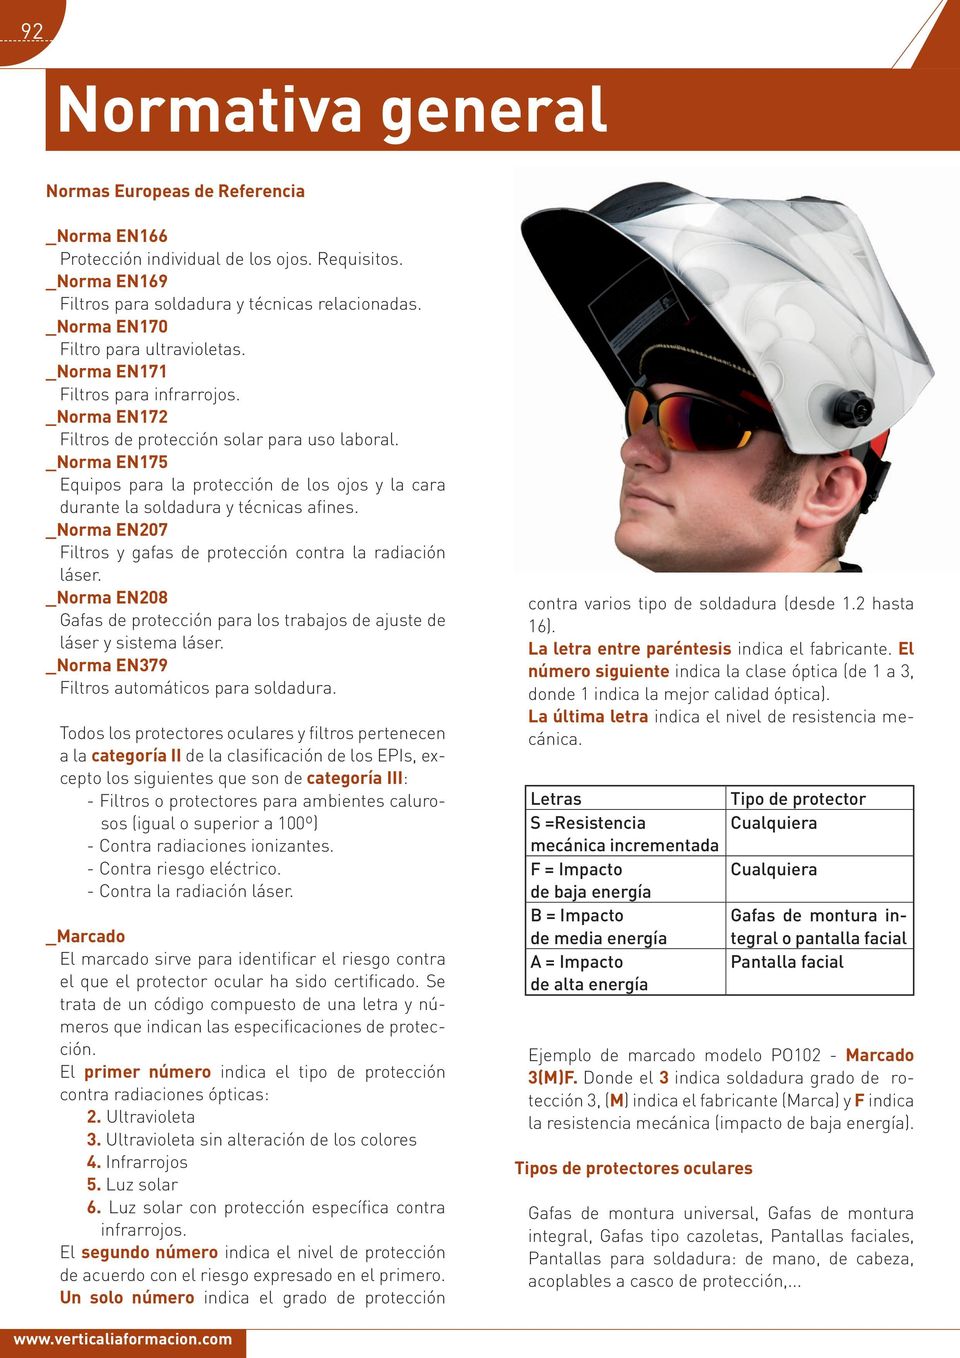 _Norma EN175 Equipos para la protección de los ojos y la cara durante la soldadura y técnicas afines. _Norma EN207 Filtros y gafas de protección contra la radiación láser.